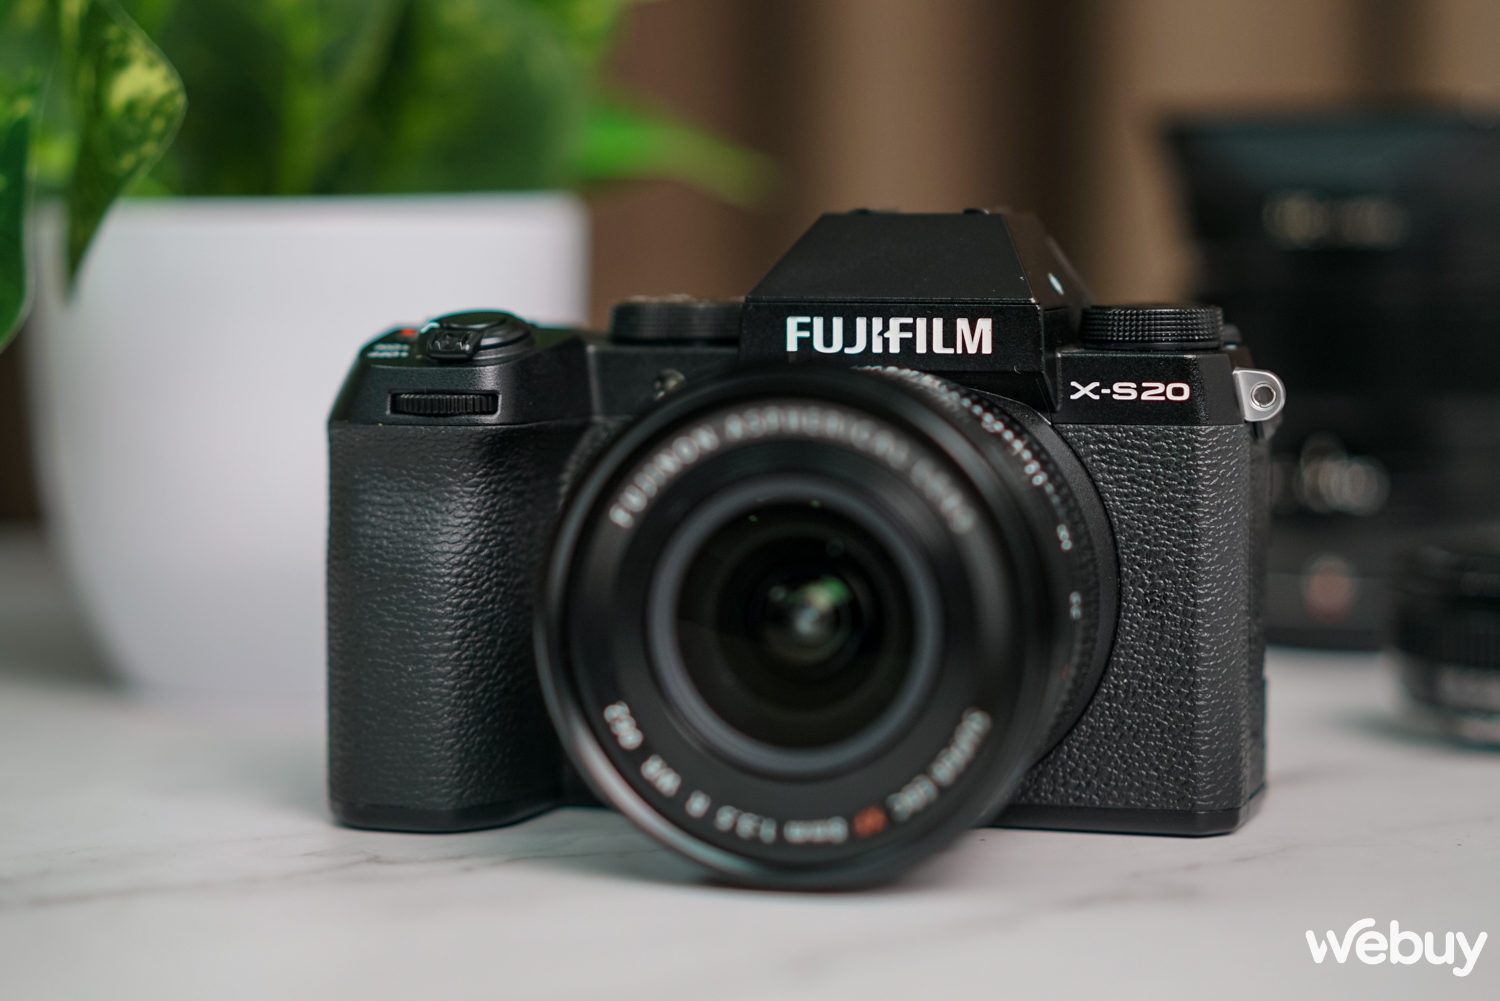 Ra đường chụp ảnh với Fujifilm X-S20: Không còn là dòng máy 'nhập môn' - Ảnh 1.